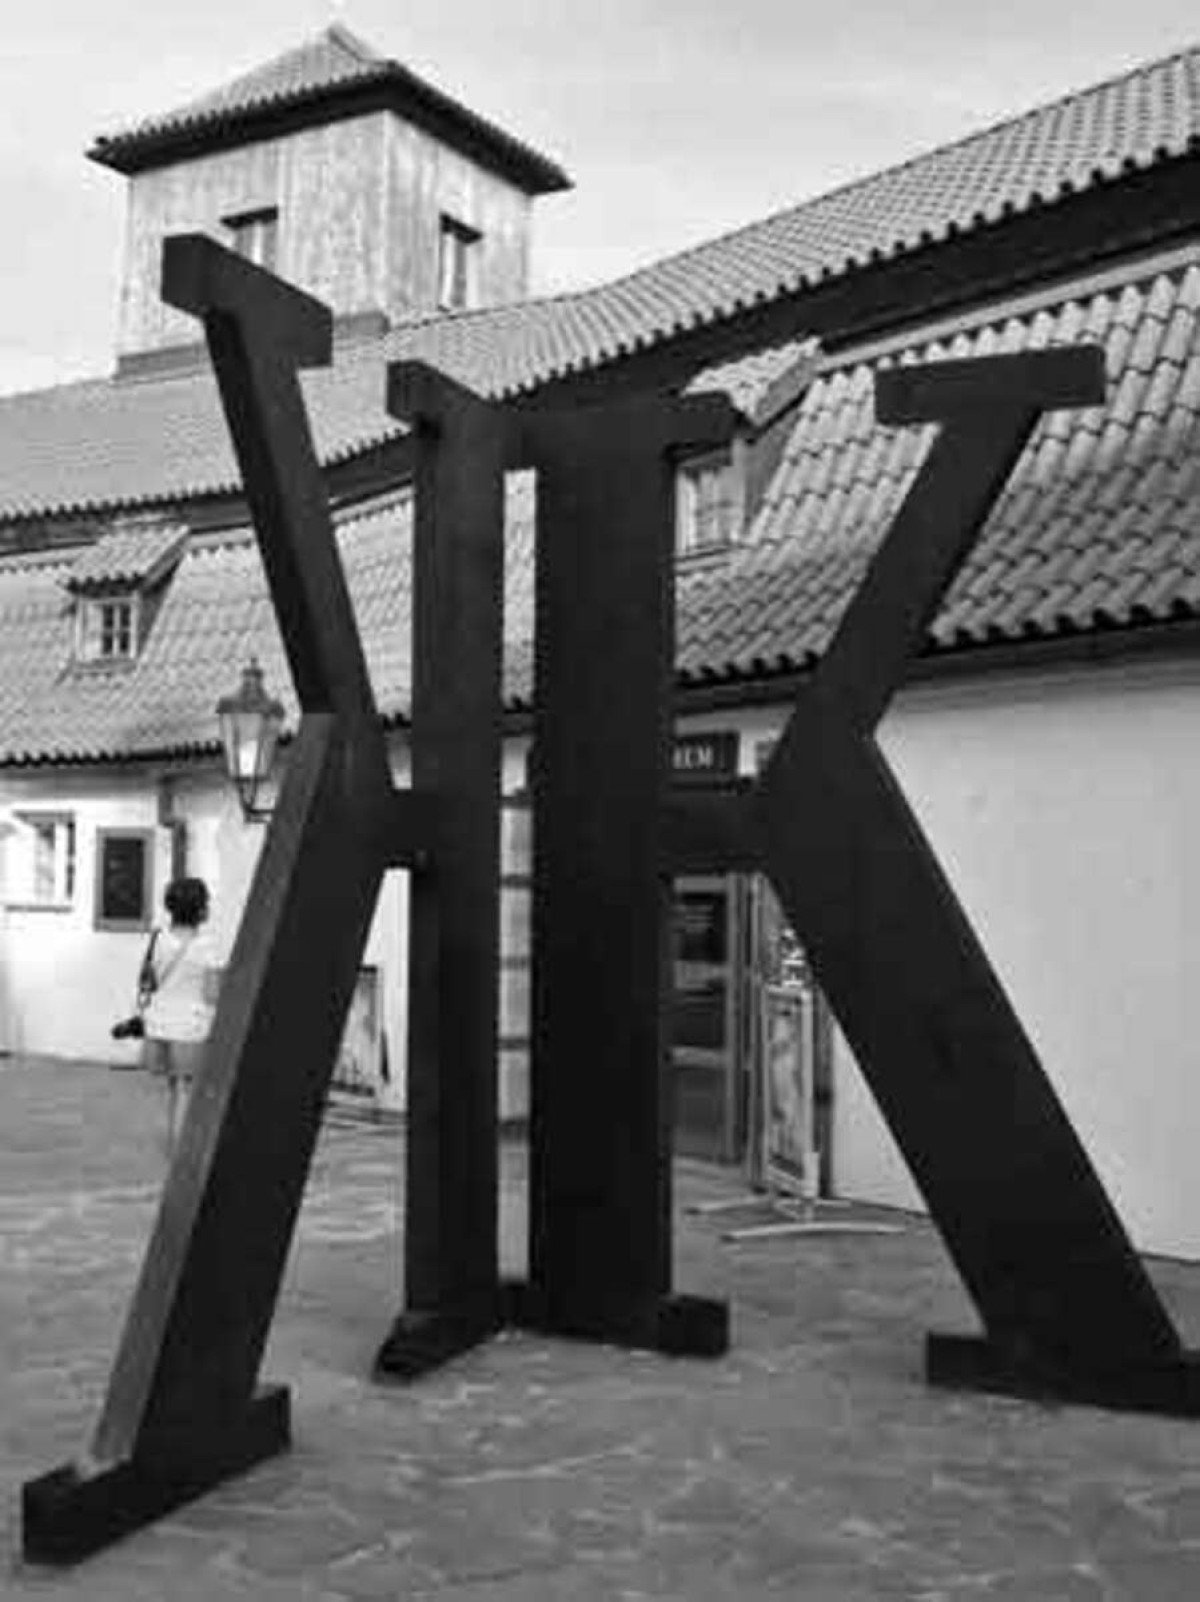 Entrada do museu dedicado a Franz Kafka, em Praga, na República Tcheca, exibe a letra inicial gigante do seu nome 